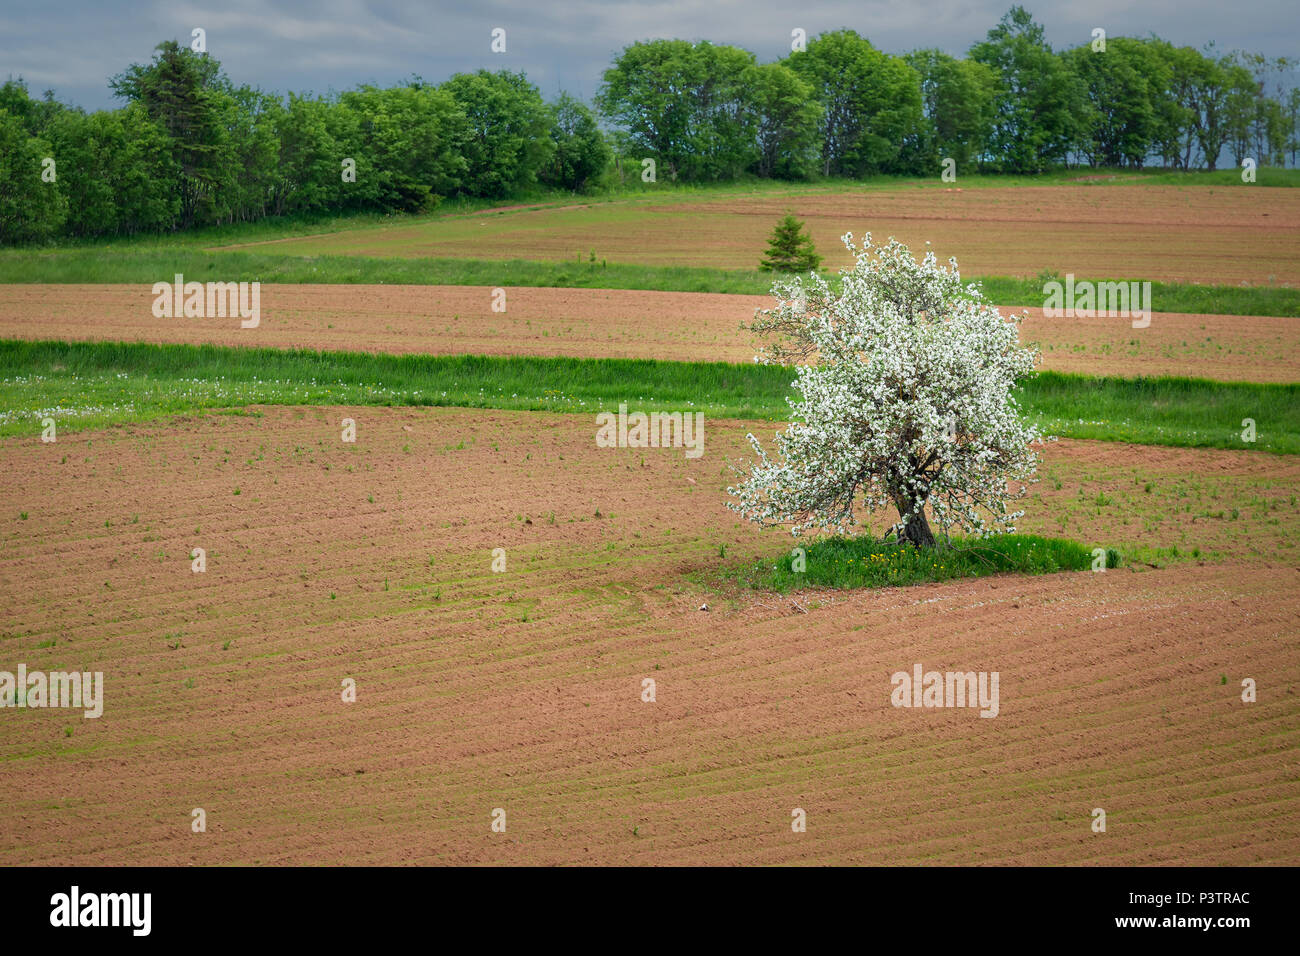 Apple tree in flower in a rural farm field. Stock Photo